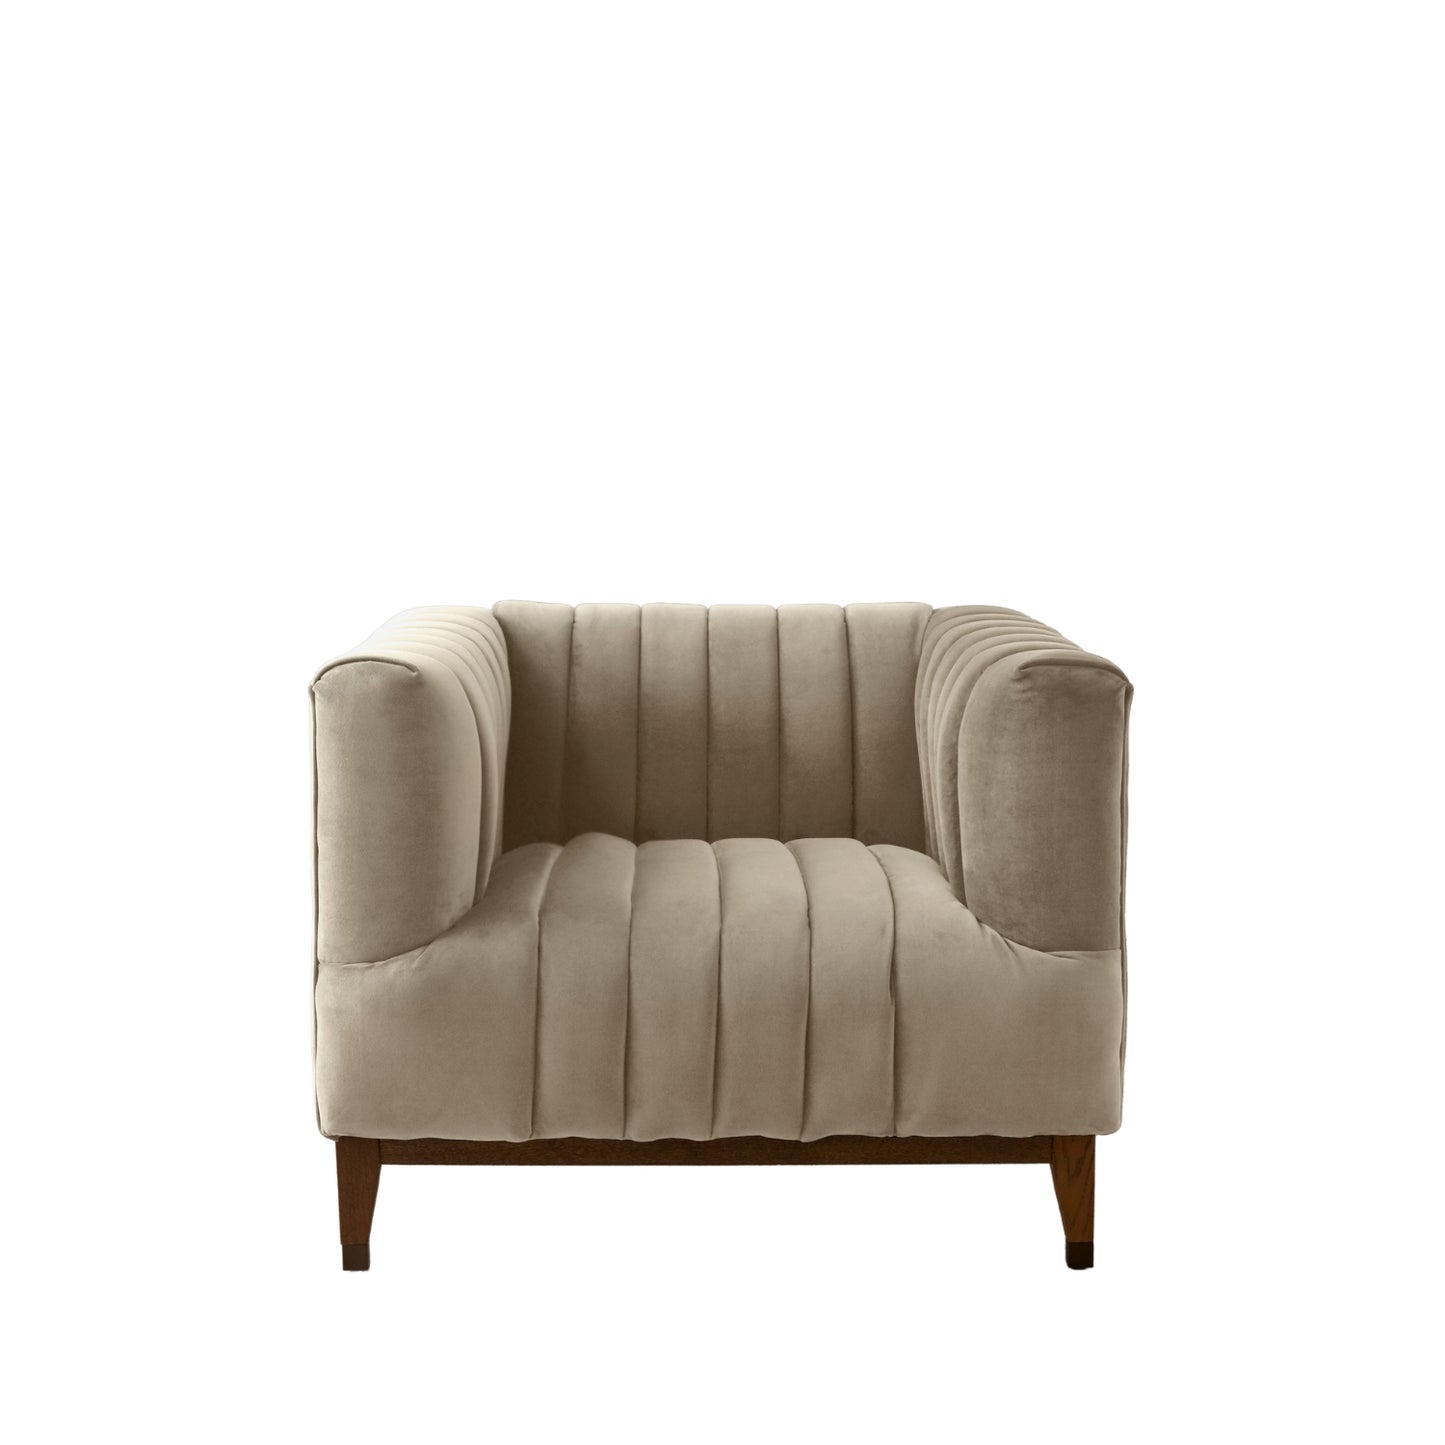 Asfor Lounge Arm Chair for Living Room | Bedroom Beige Soft Velvet Fabric Mid Century Modern Design